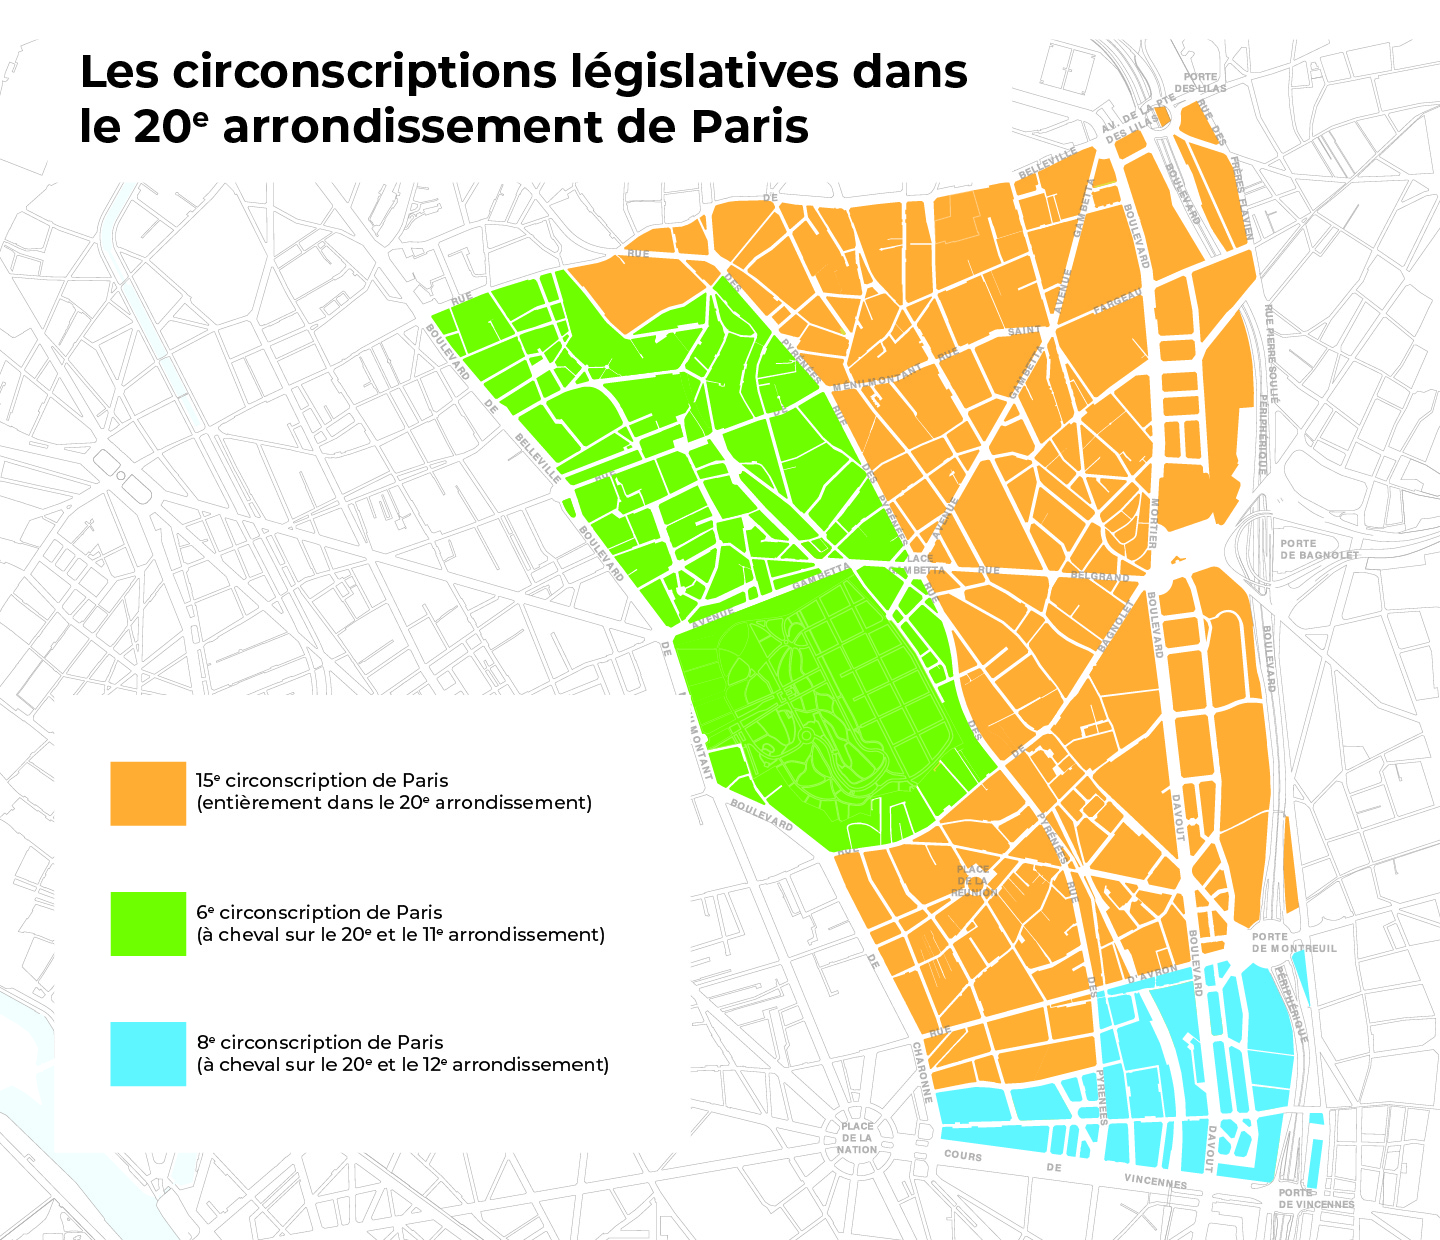 Les circonscriptions législatives du 20e arrondissement